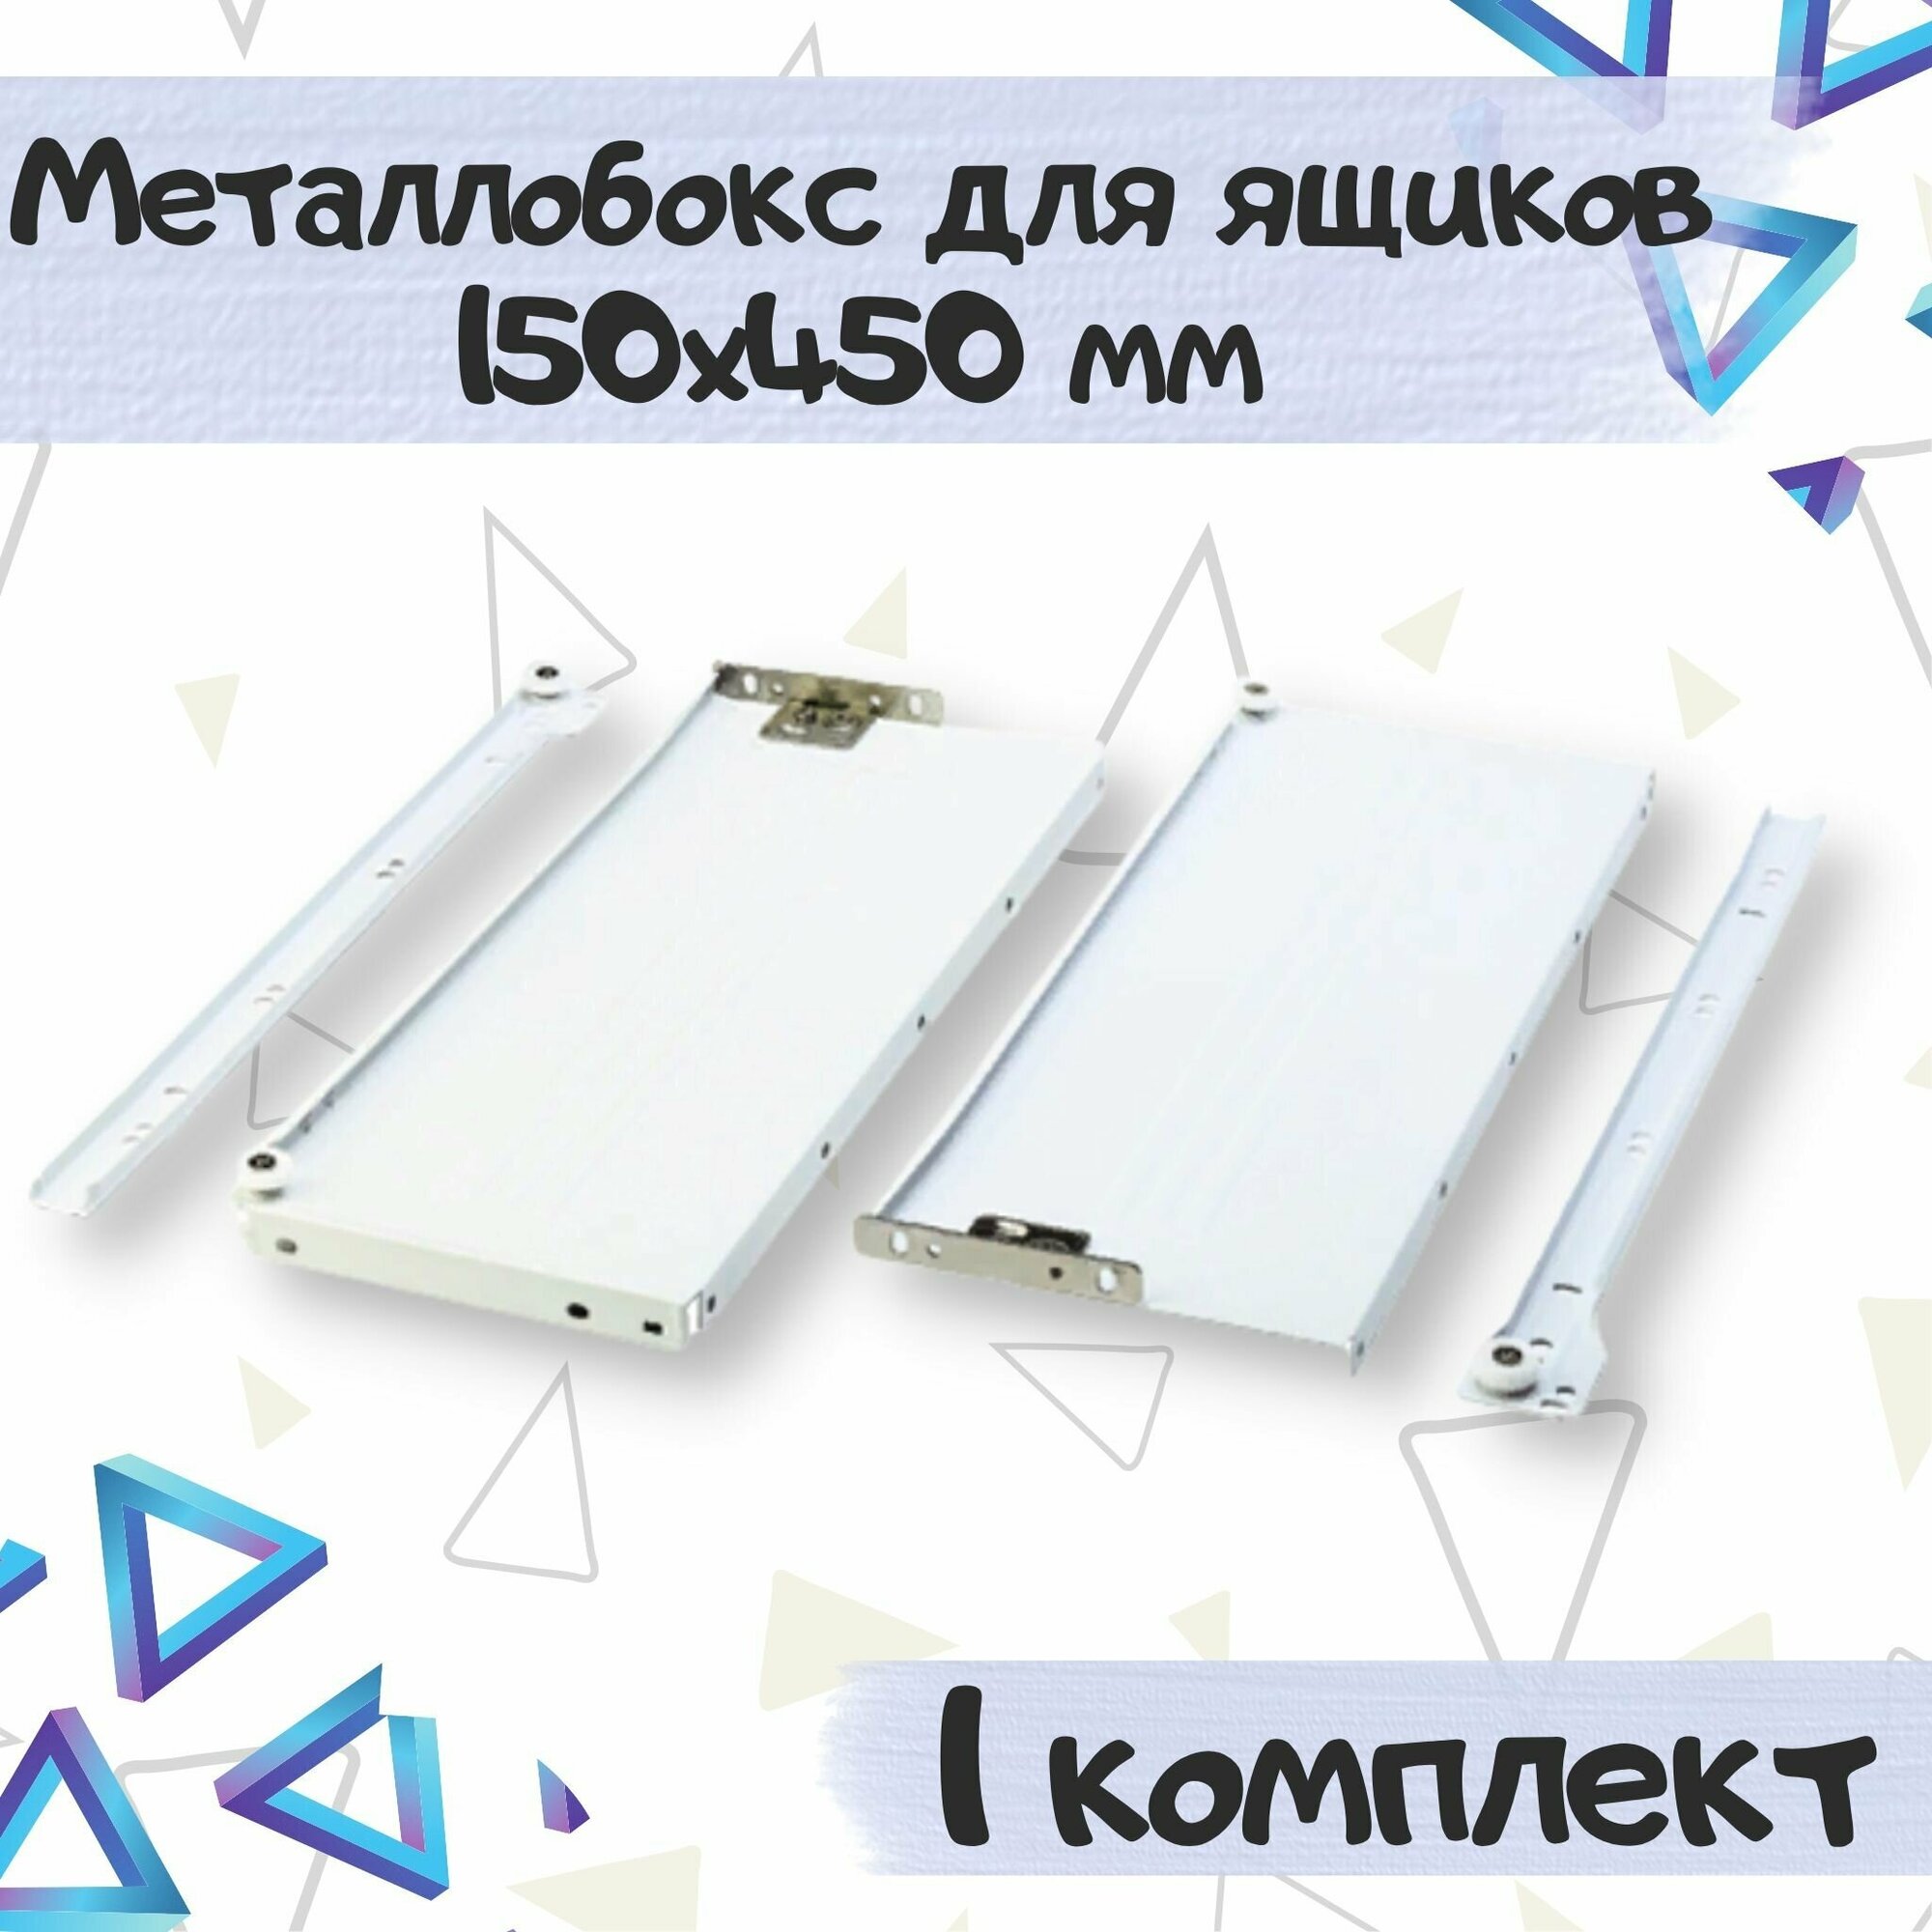 Металлобокс для ящиков 150х450 мм, метабокс белый - 1 комплекта(для 1 ящика) - фотография № 1